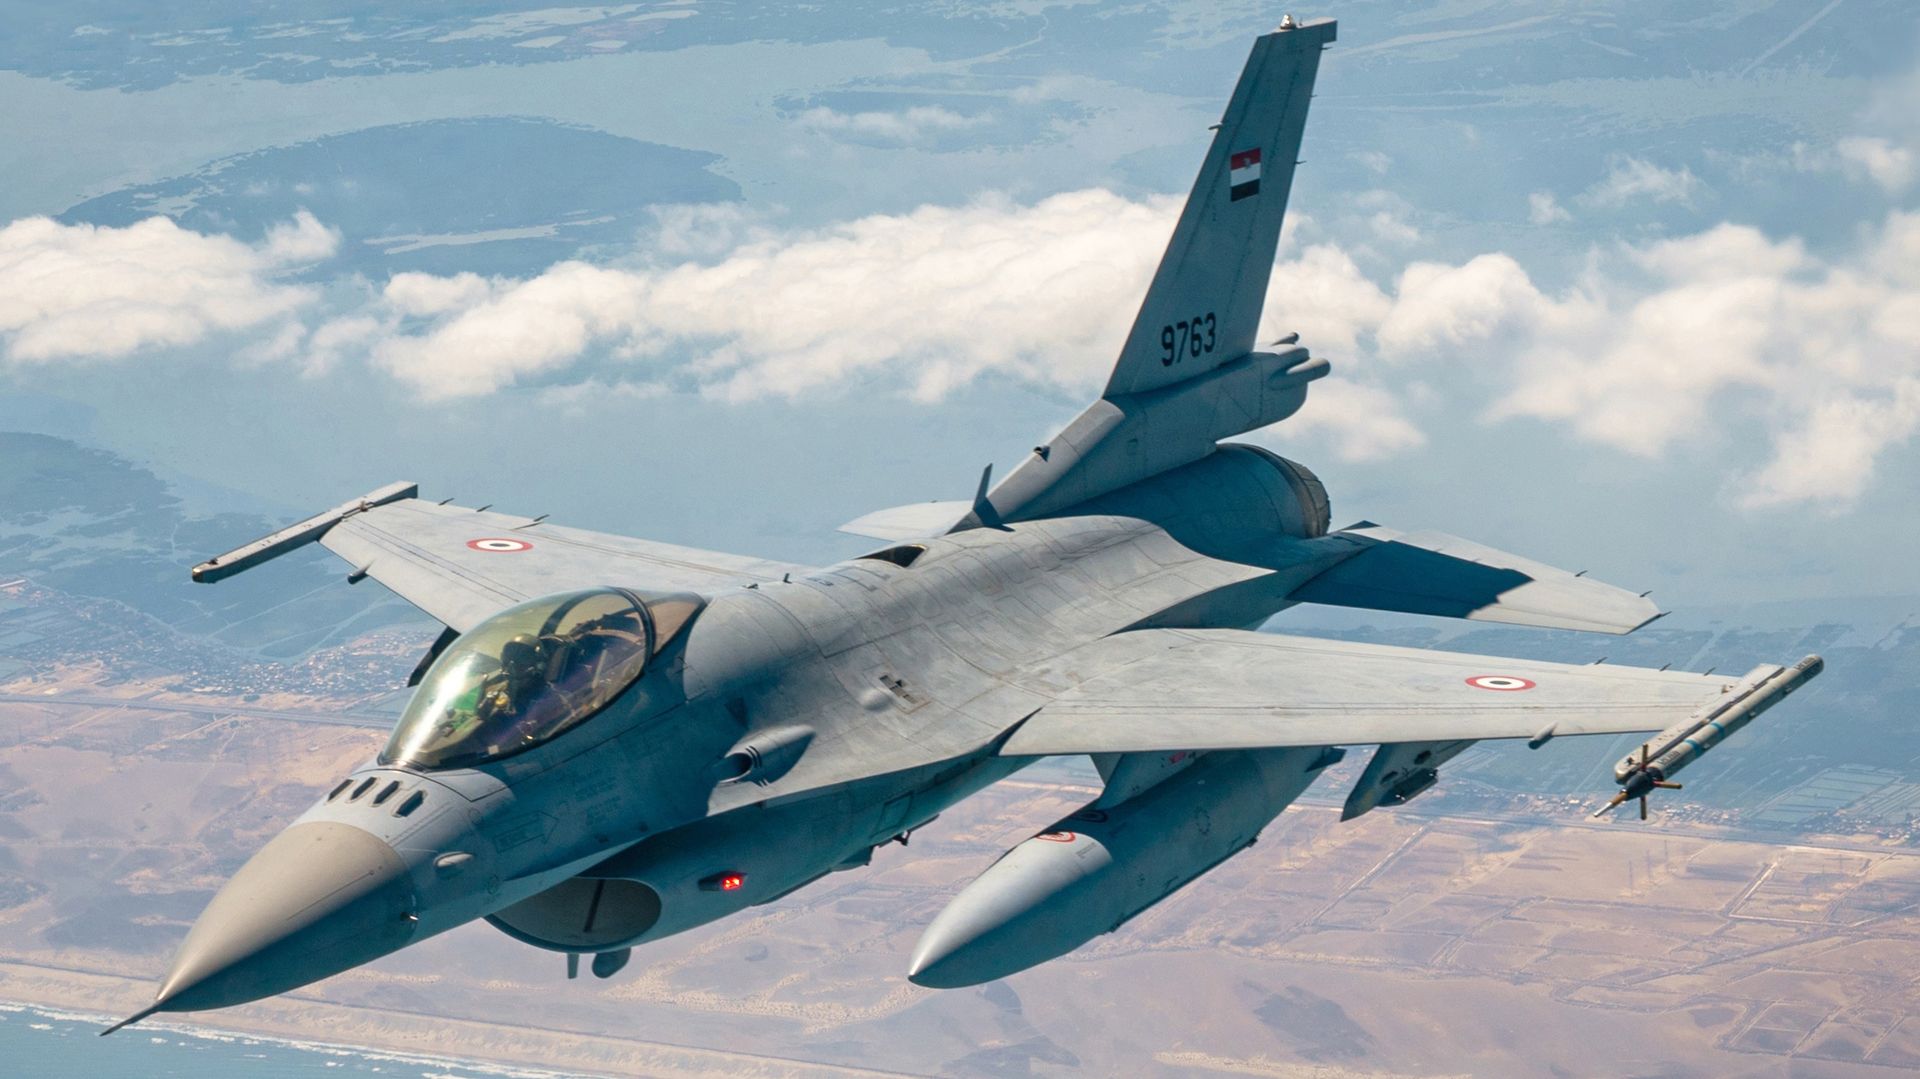 Читатели Daily Mail обвинили Запад в попытке развязать третью мировую войну поставками Украине F-16